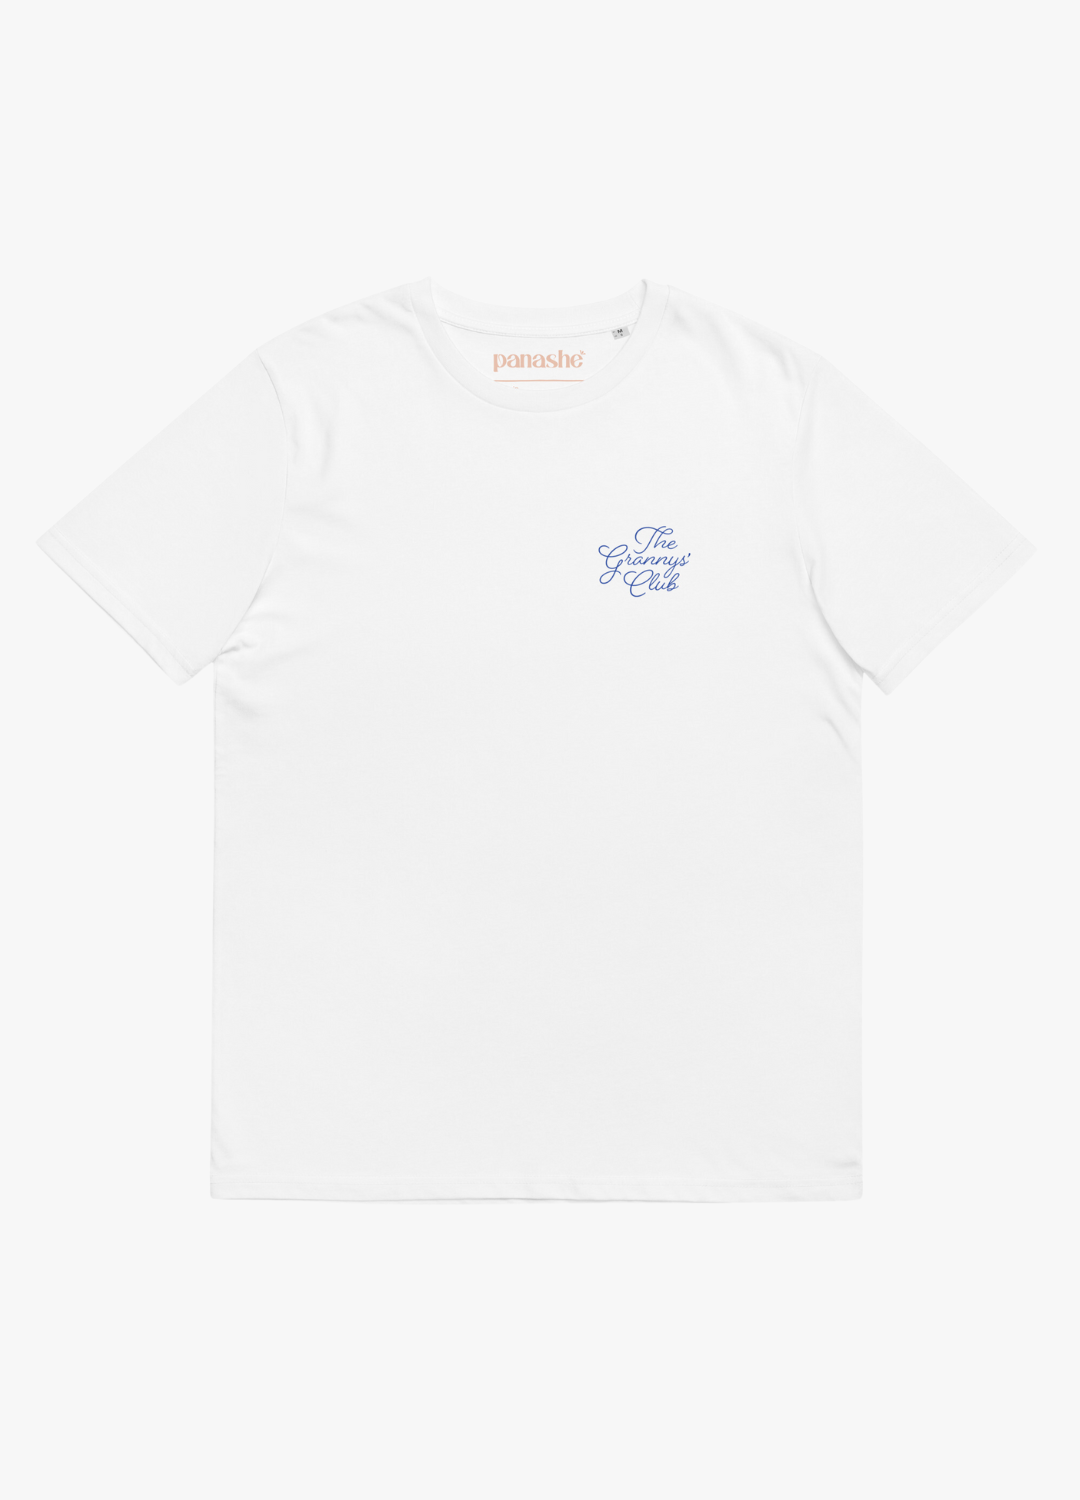 tshirt manche courte blanc en coton pour femme avec texte bleu en écriture élégante sur la poitrine design minimaliste et tendance